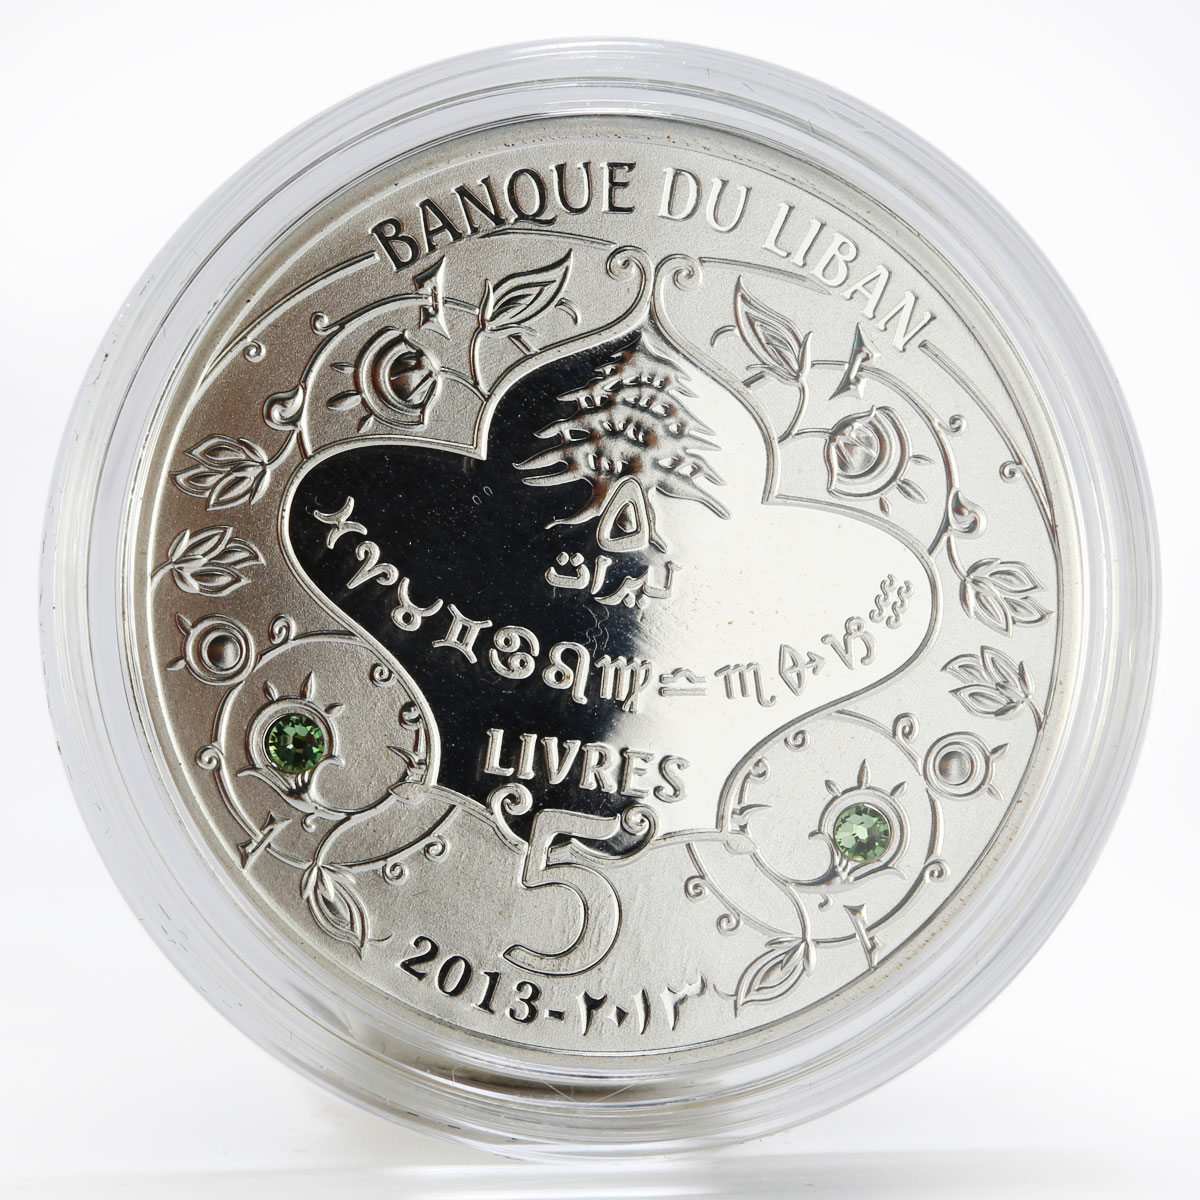 Lebanon 5 livres Zodiac Signs Gemini colored proof silver coin 2013